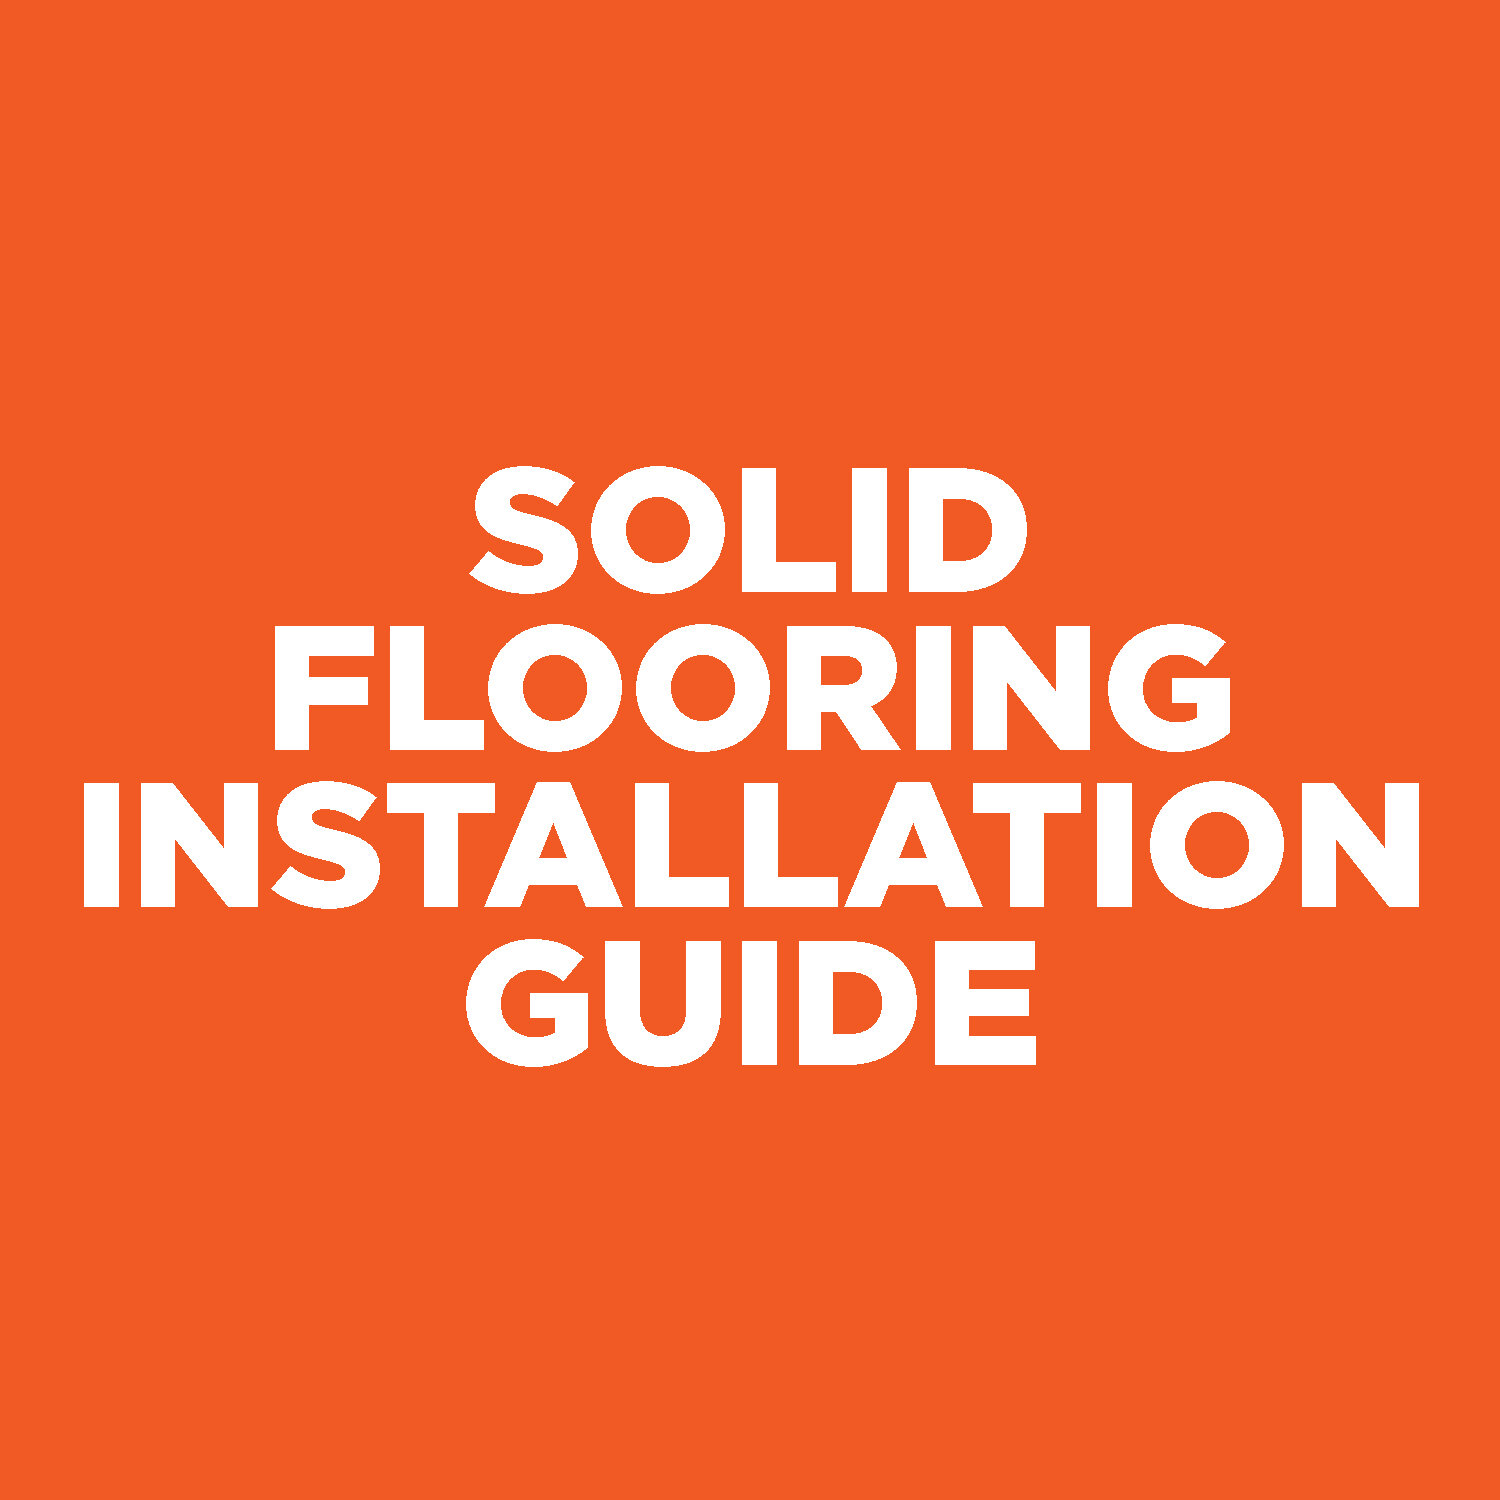 Solid Flooring Installation Guide